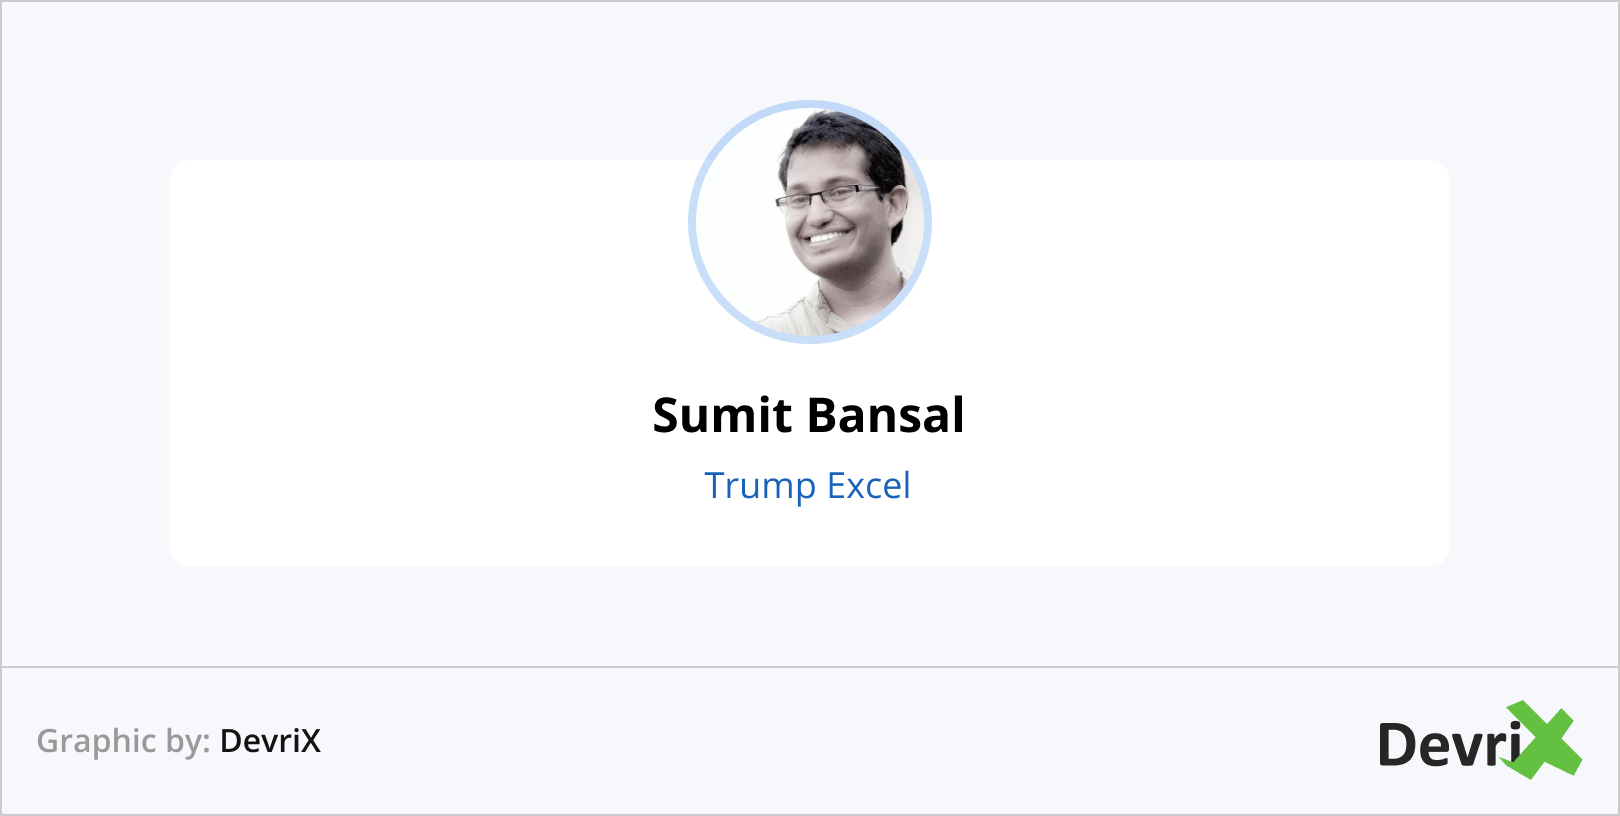 Sumit Bansal